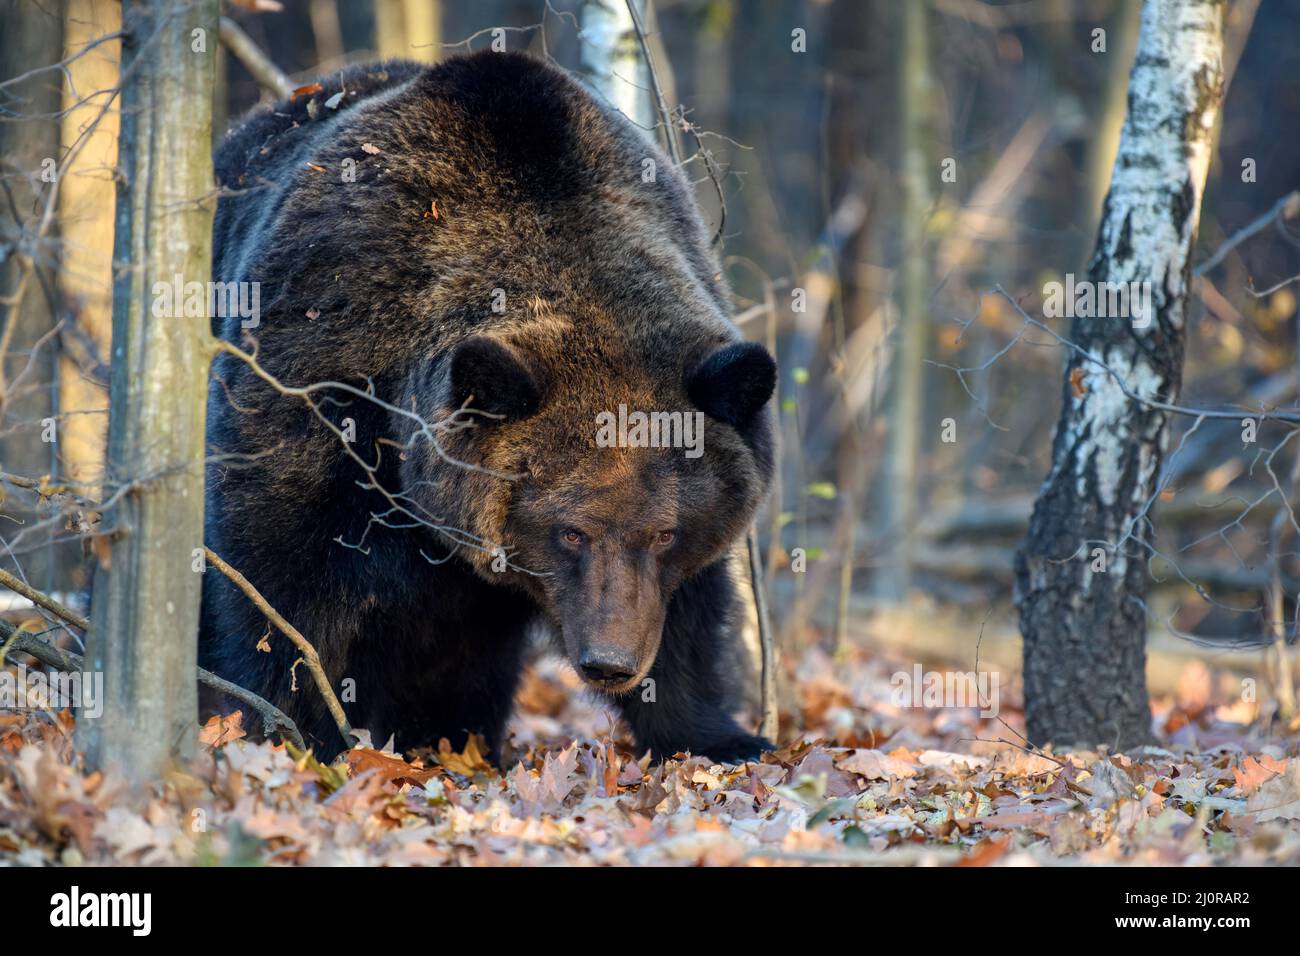 Wild Brown Bear (Ursus arctos) nella foresta. Animale in habitat naturale. Scena della fauna selvatica Foto Stock